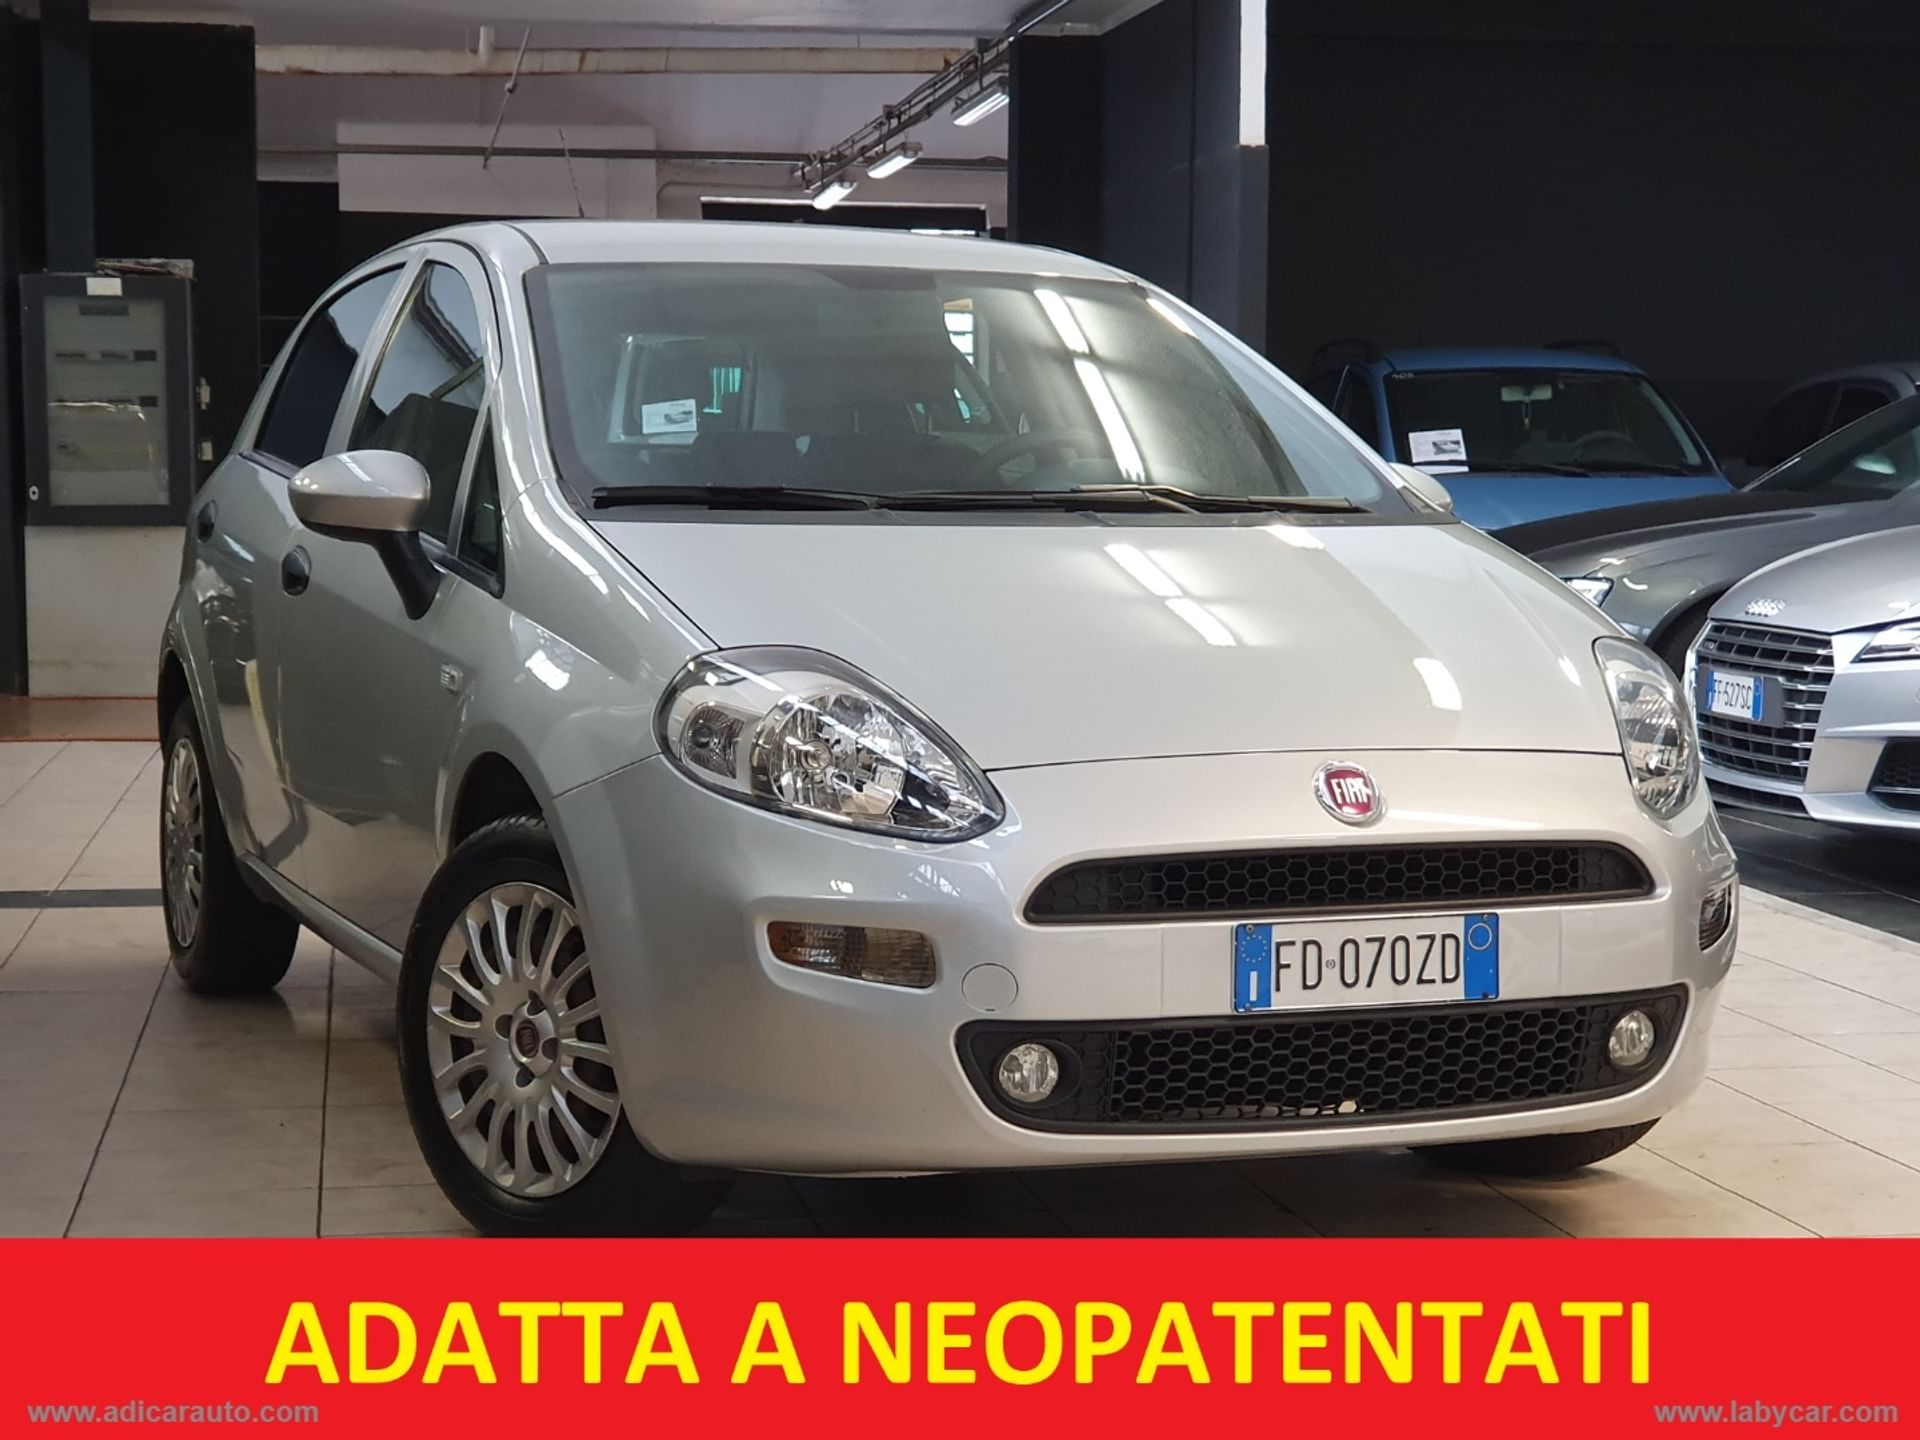 Fiat Uno usata a Torino per € 6.100